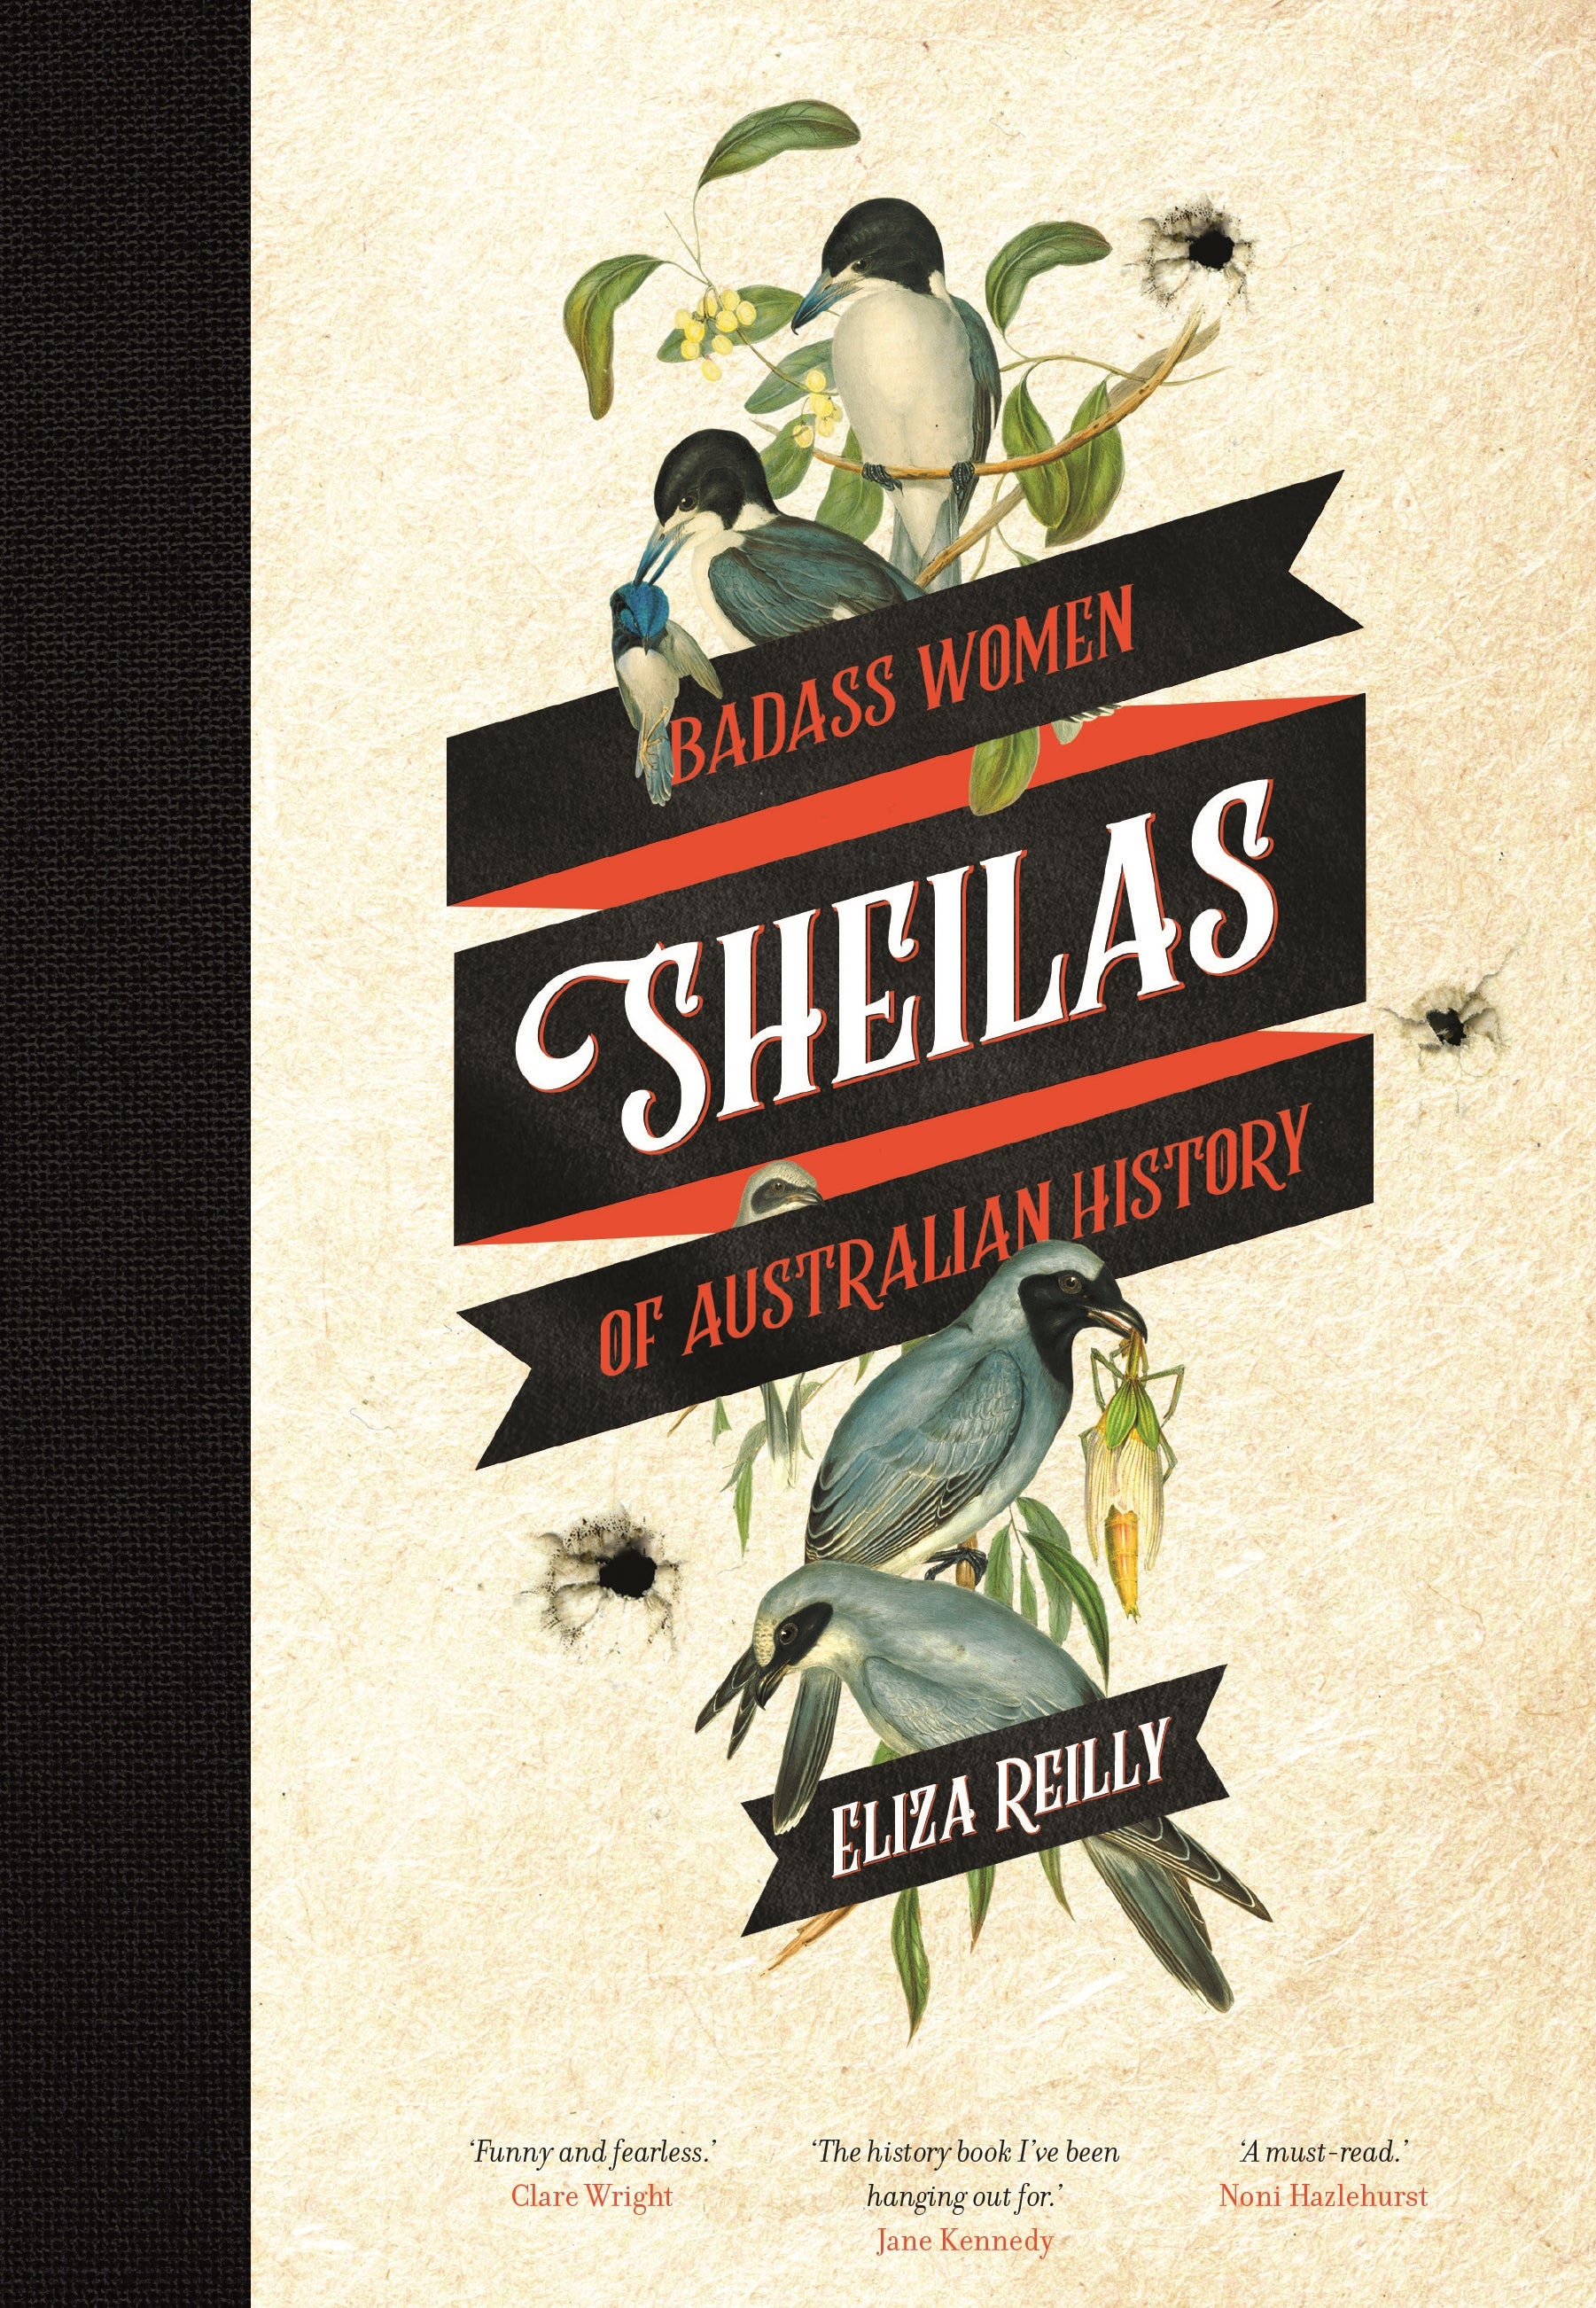 Sheilas: Badass Women of Australian History